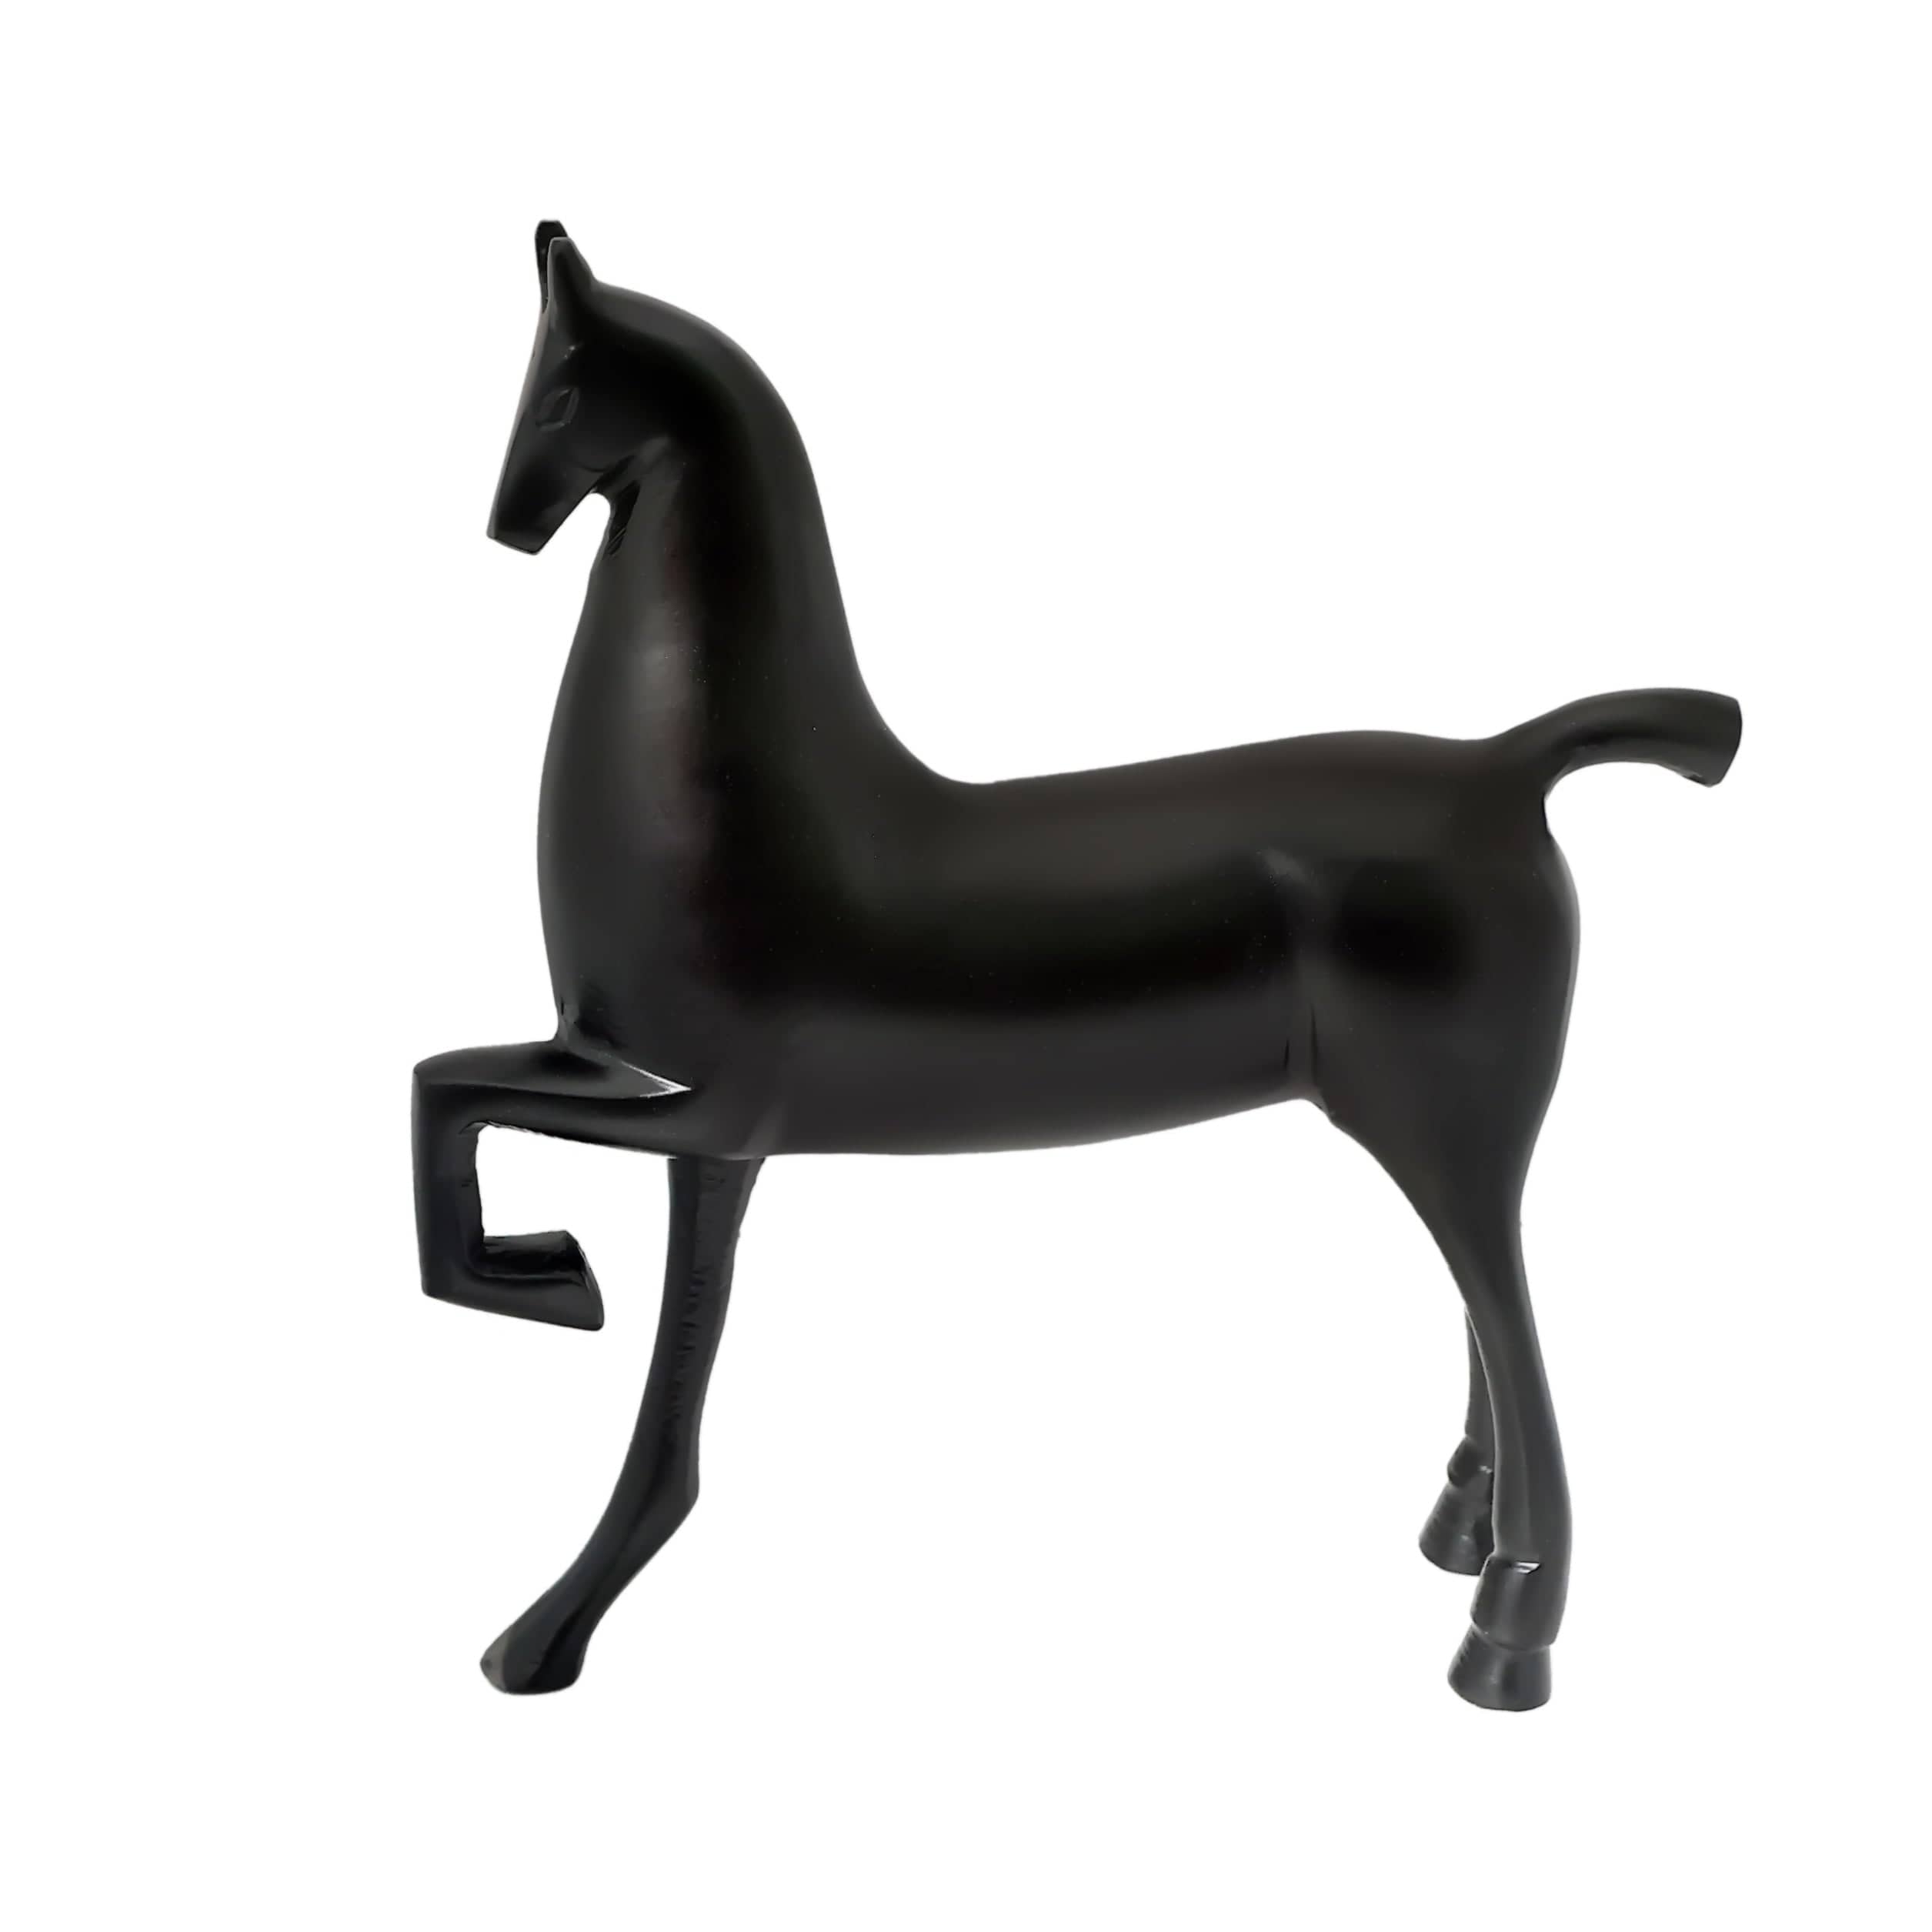 Enigmatic Equine Sculpture Black